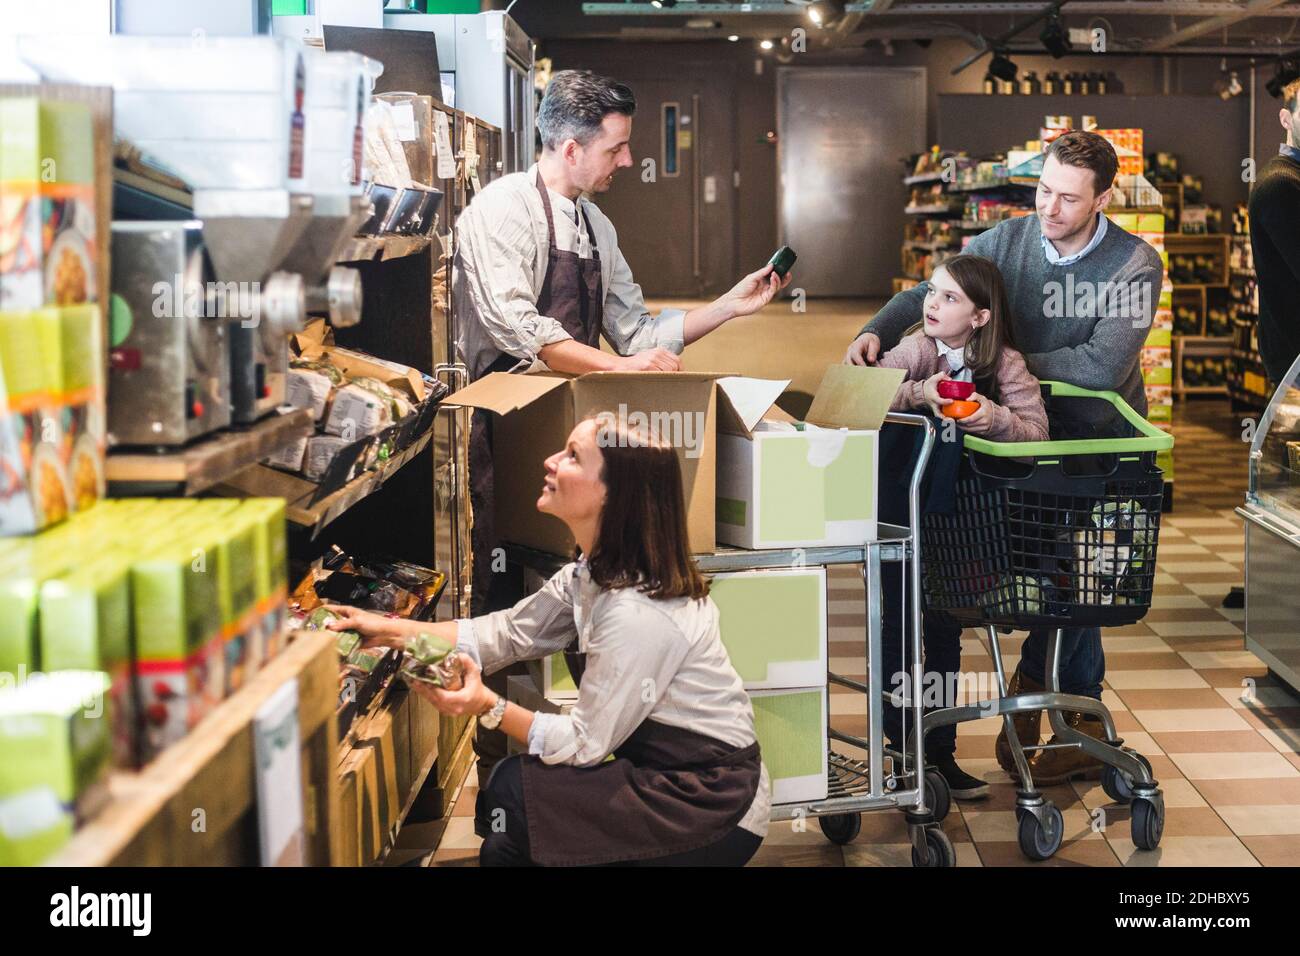 Verkäufer hilft Kunden, während Verkäuferin Regal im Supermarkt zu arrangieren Stockfoto